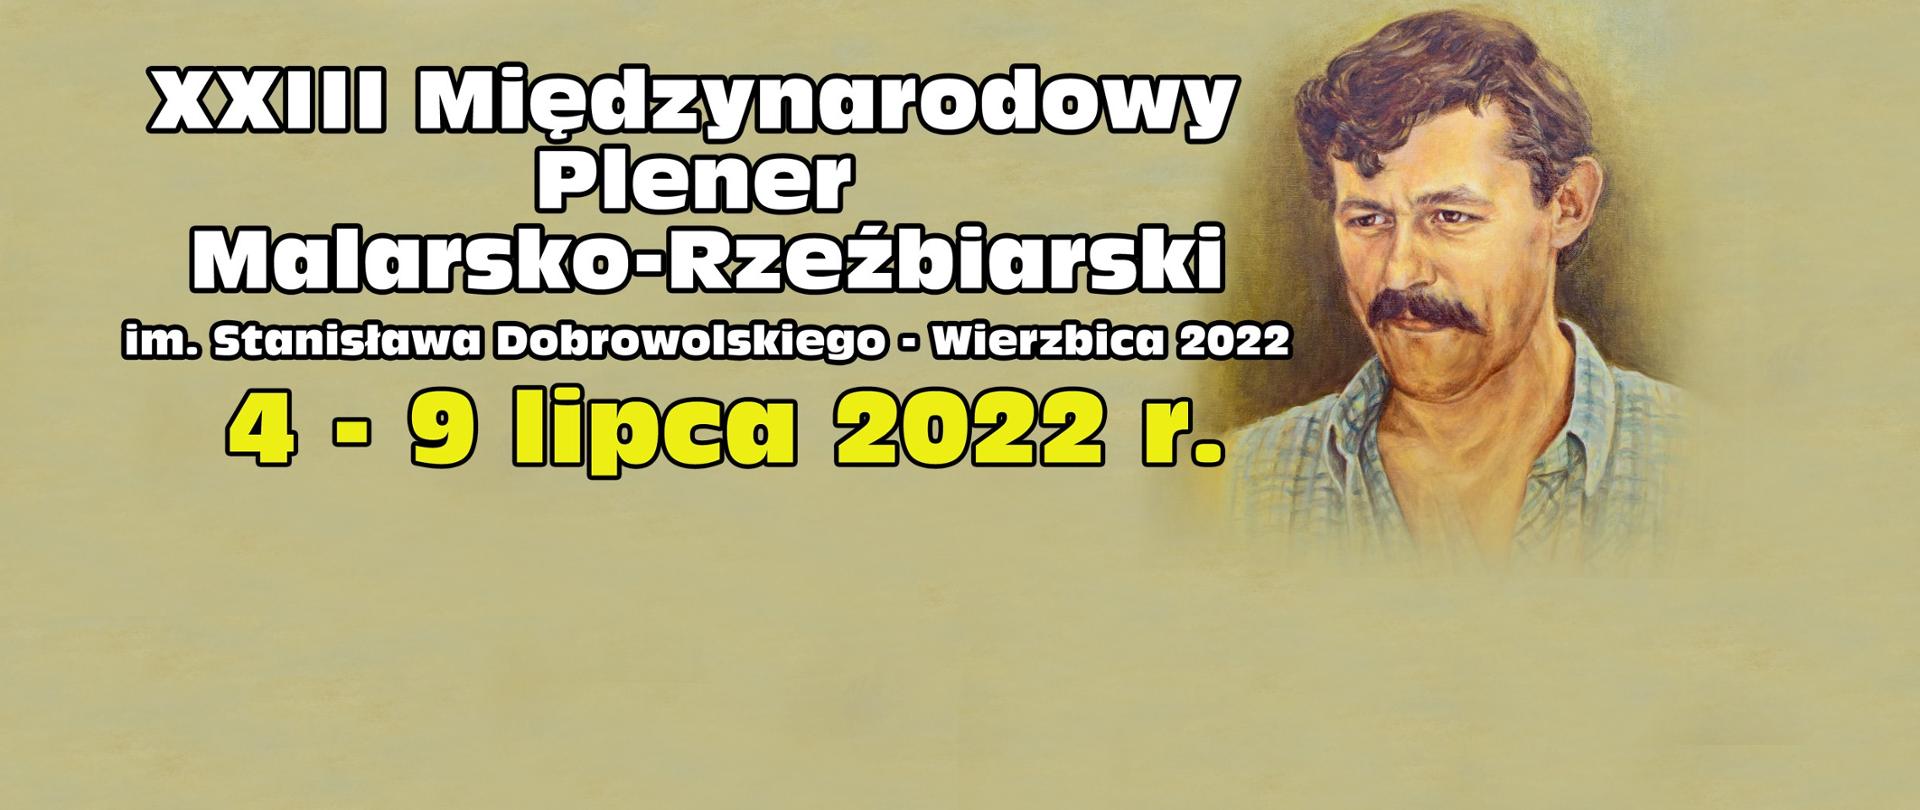 XXIII Międzynarodowy Plener Malarsko-Rzeźbiarski im. Stanisława Dobrowolskiego Wierzbica 2022